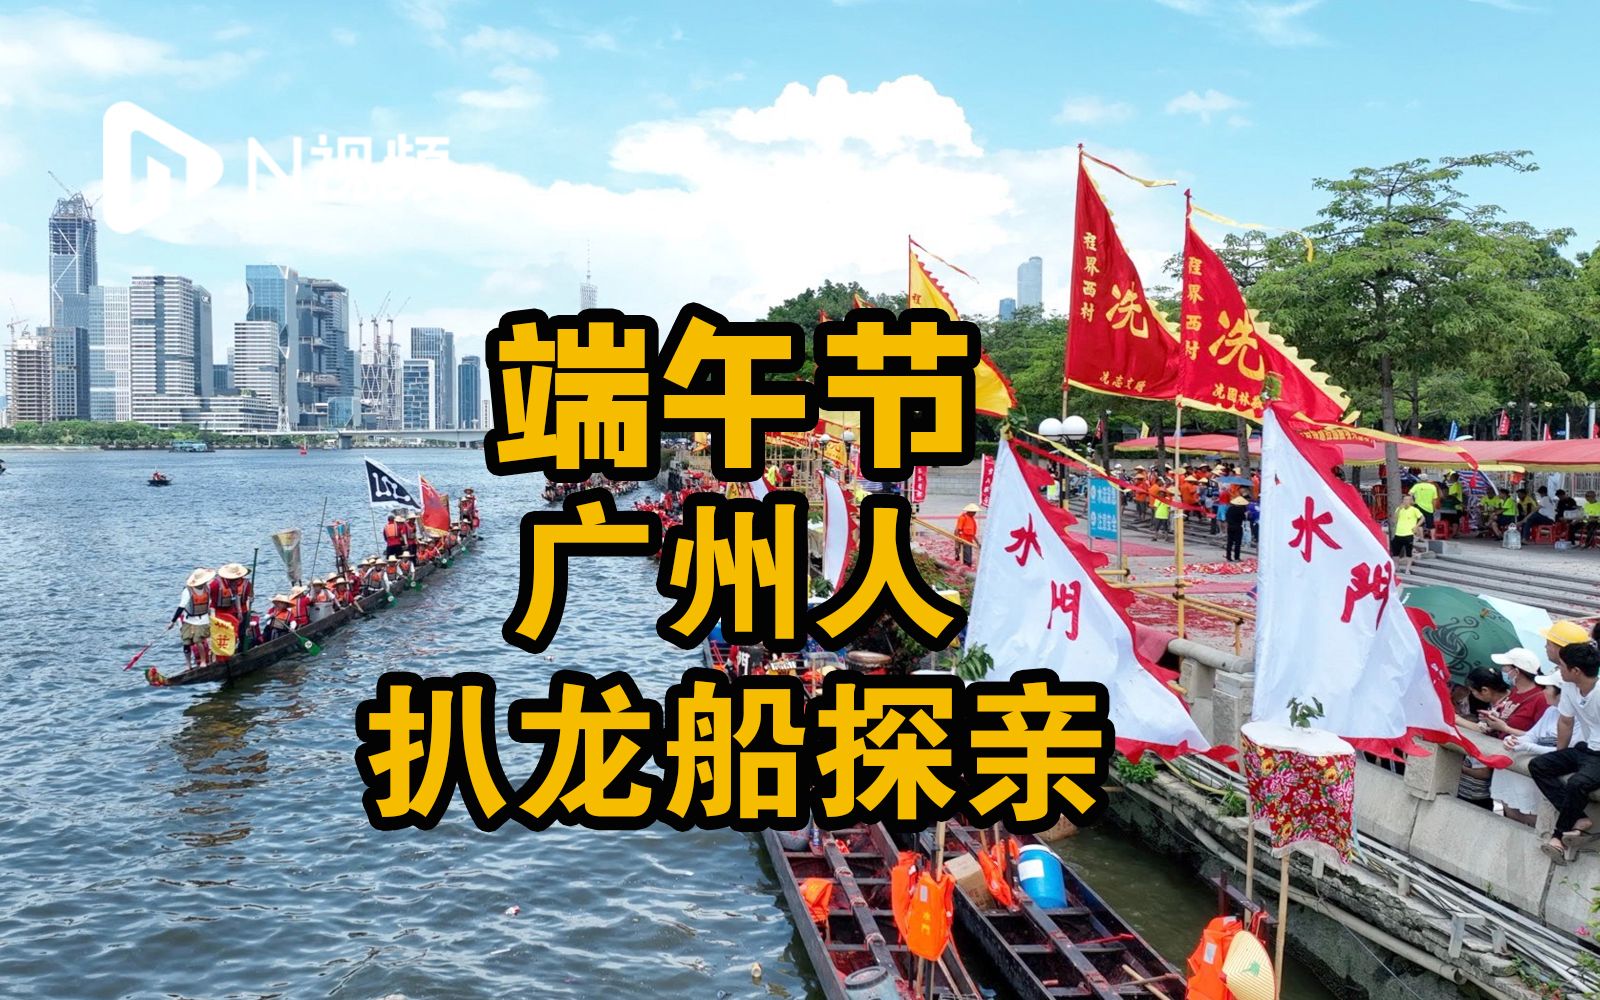 好墟撼！广州数百条龙船穿行珠江上演“游龙探亲”盛景